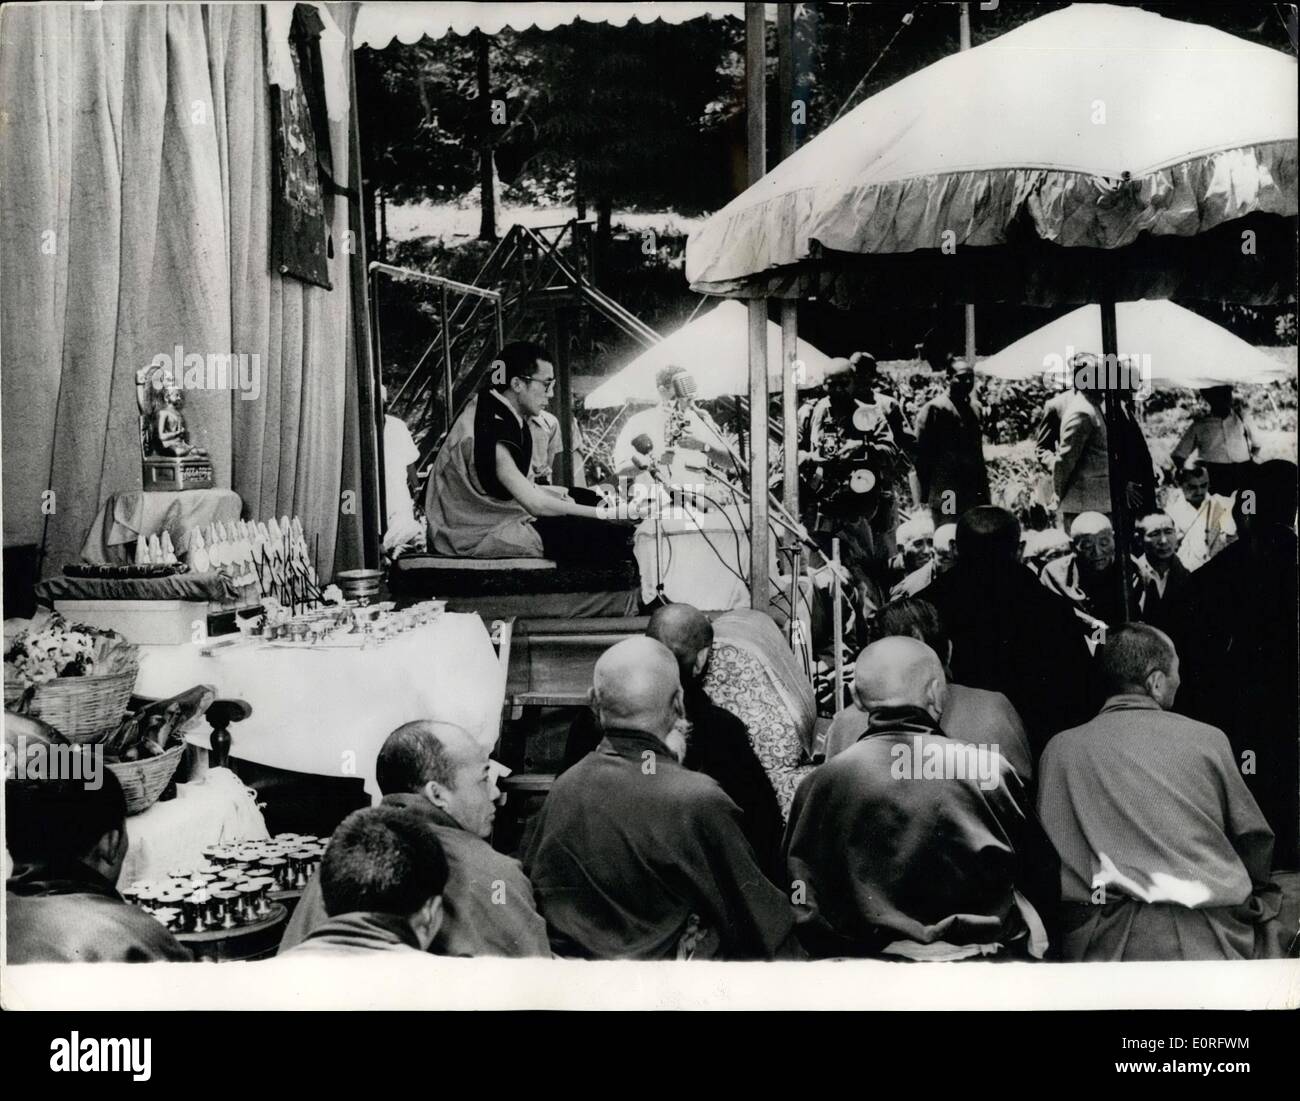 Mai 05, 1959 - La maison à Mussorie Birla, Inde, a présenté une apparence colorée à la veille d'un Bouddha Purni le vendredi, lorsqu'un grand festival, les prières et les rituels, ont eu lieu au cours de laquelle le dalaï-lama a participé. La photo montre le dalaï-Lama avant de s'occupent des prières d'une grande ville cosmopolite de congrégation. Banque D'Images